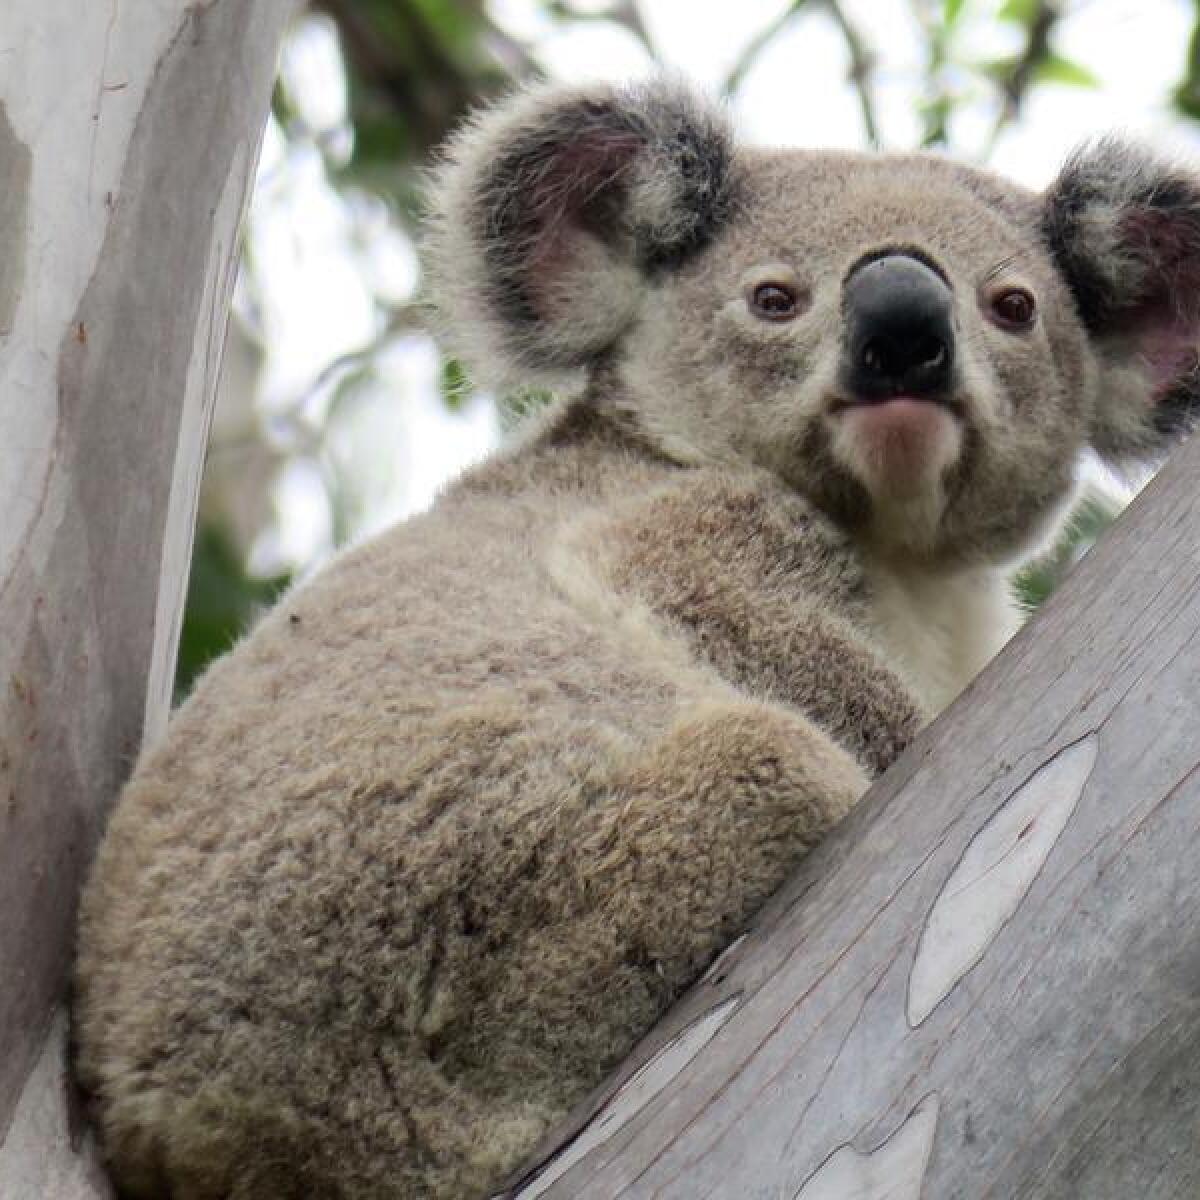 A koala.